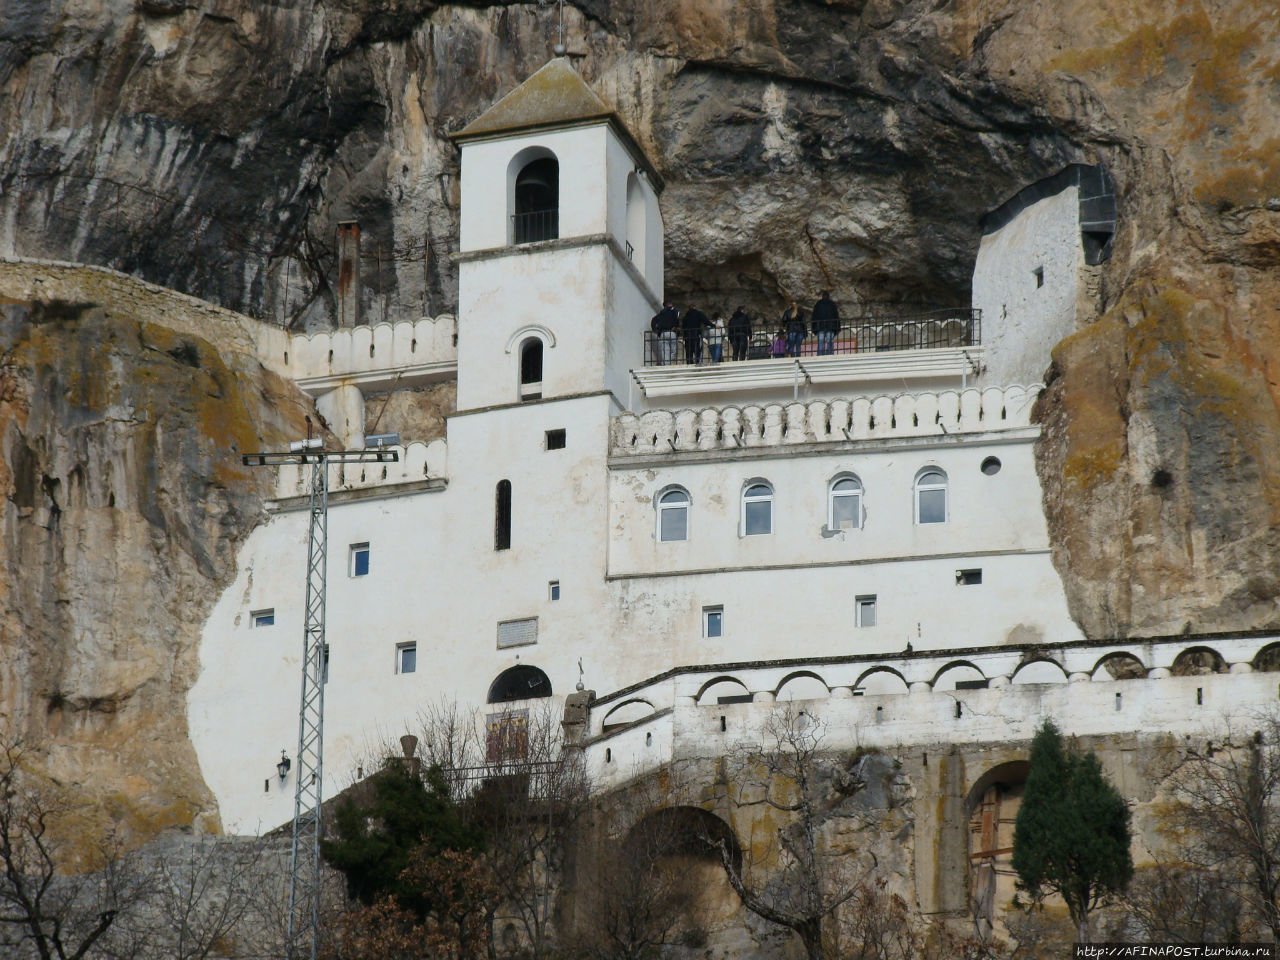 Острог. Парящий монастырь монастырь Острог, Черногория